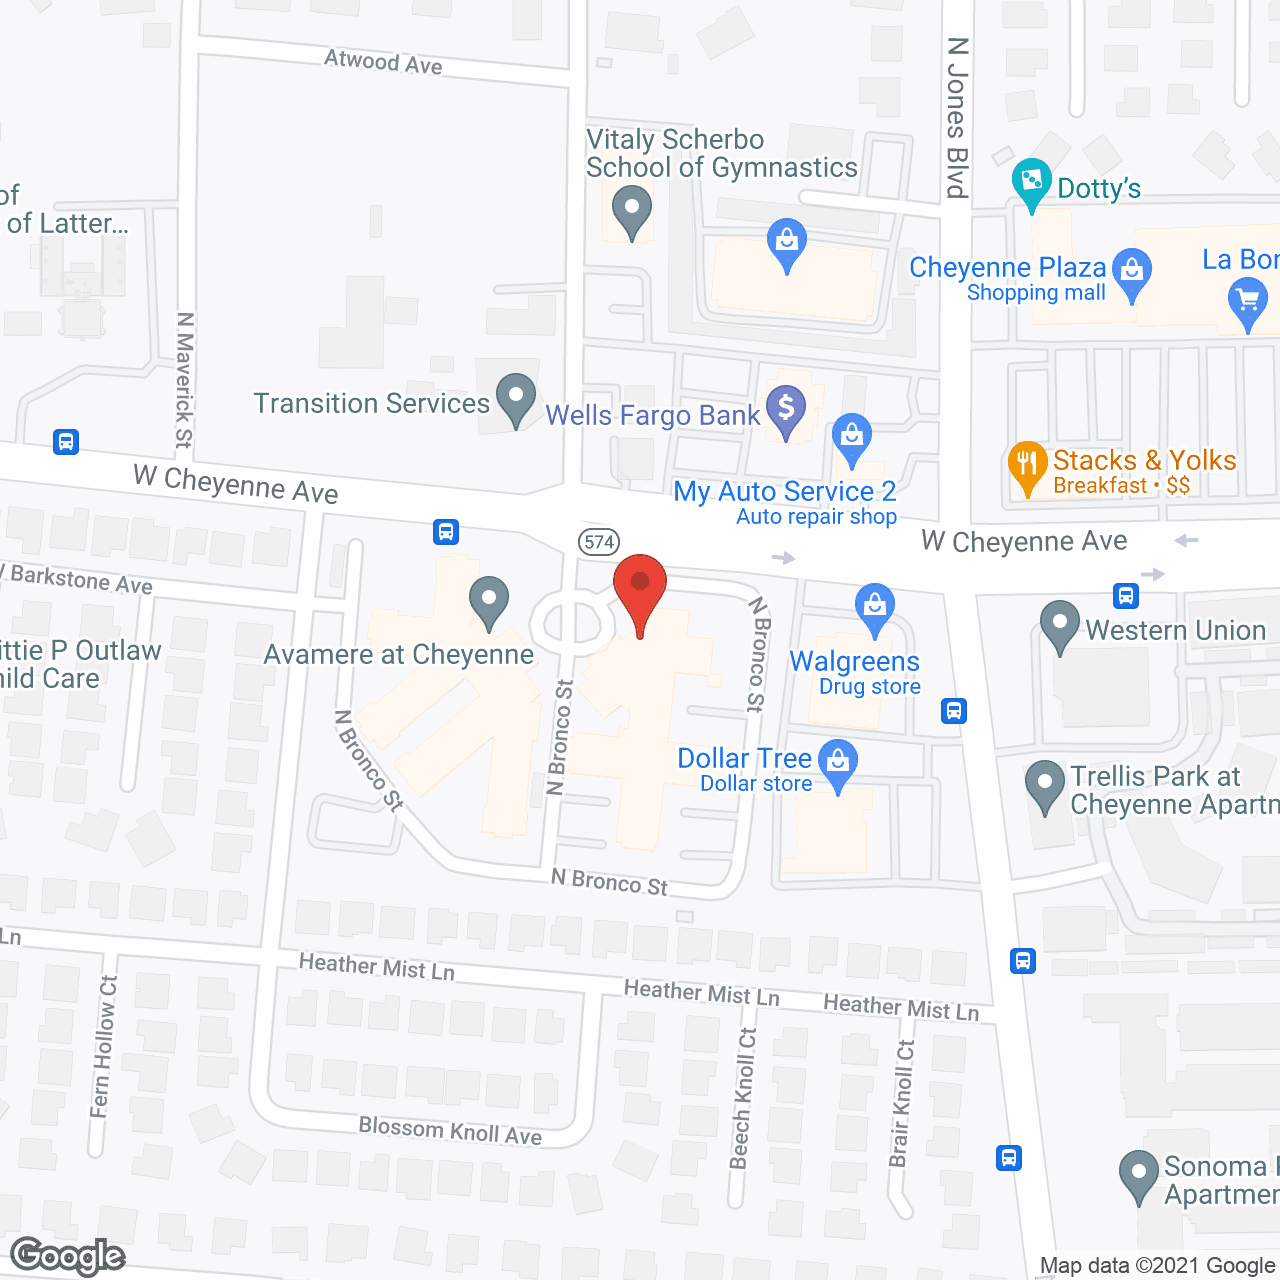 Plaza Regency in google map